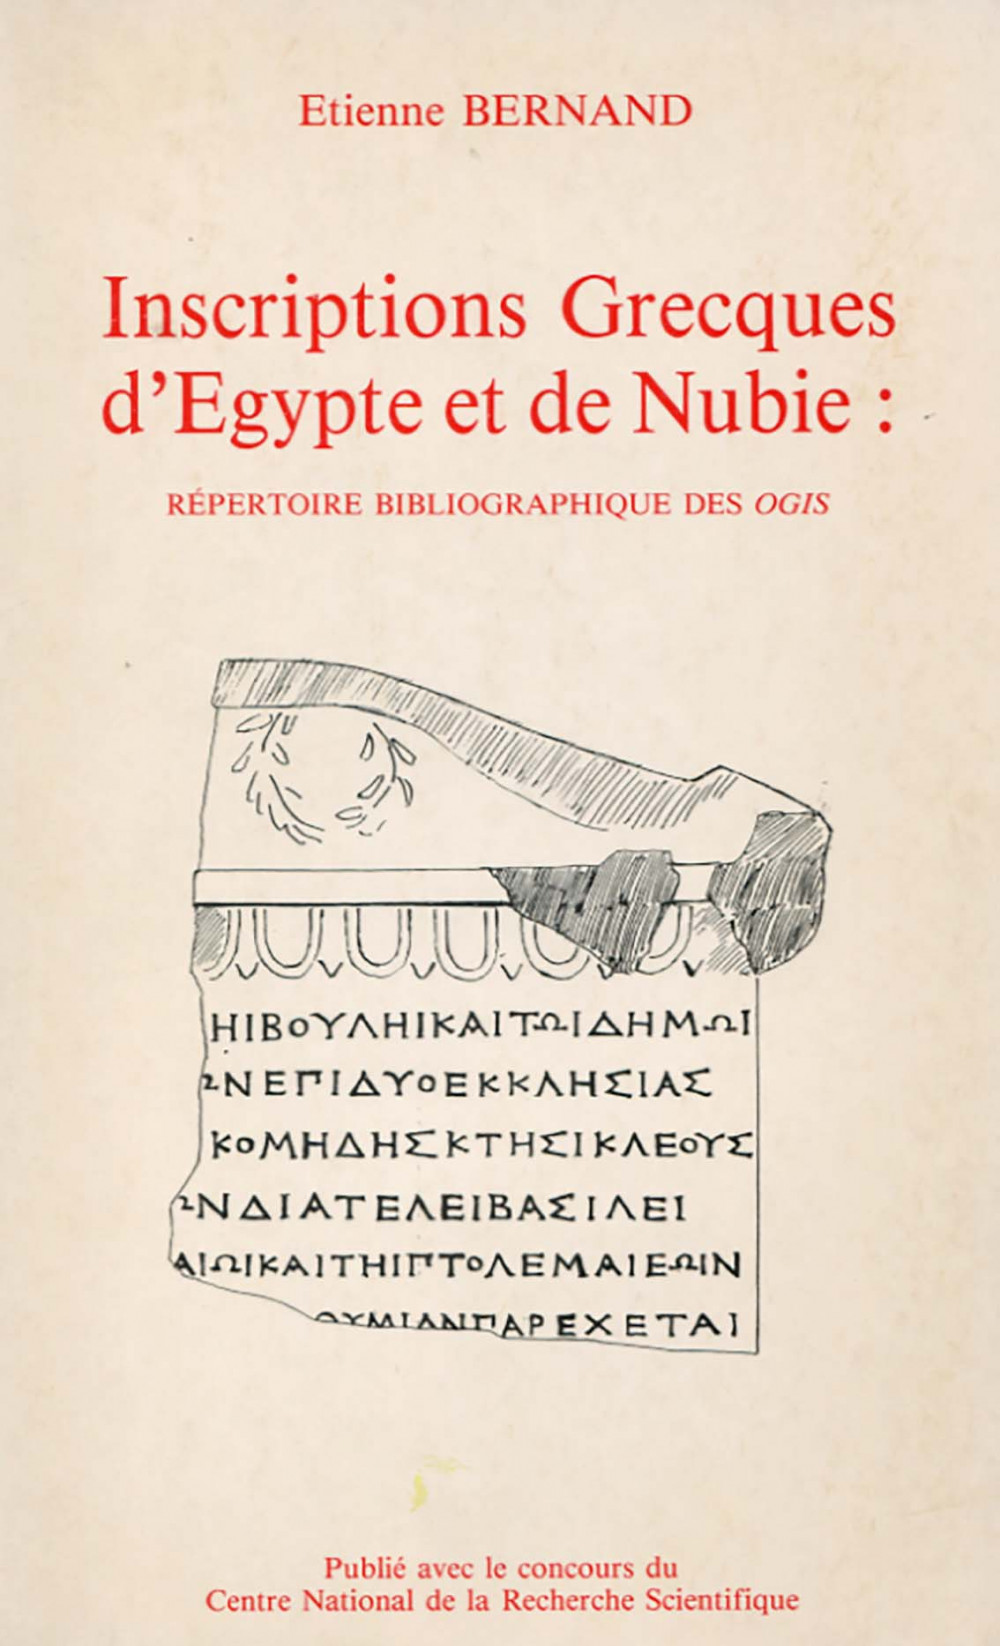 Inscriptions grecques d'Egypte et de Nubie